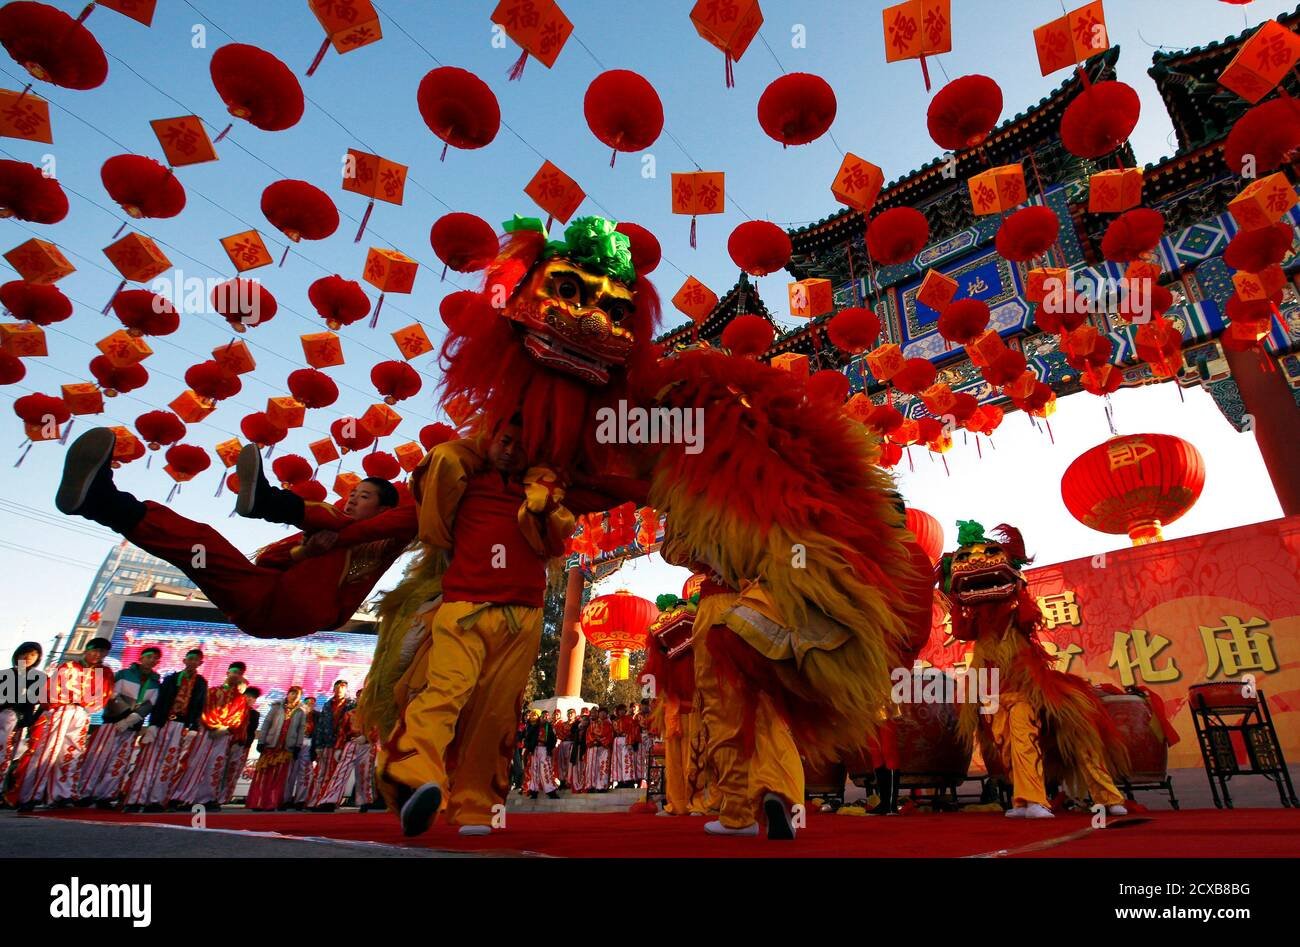 Китайская пародия. Танец дракона и Льва в Китае. Китайский новый год танец дракона. Праздник фонарей в Китае танец дракона. Танец Льва и дракона в Китае новый год.